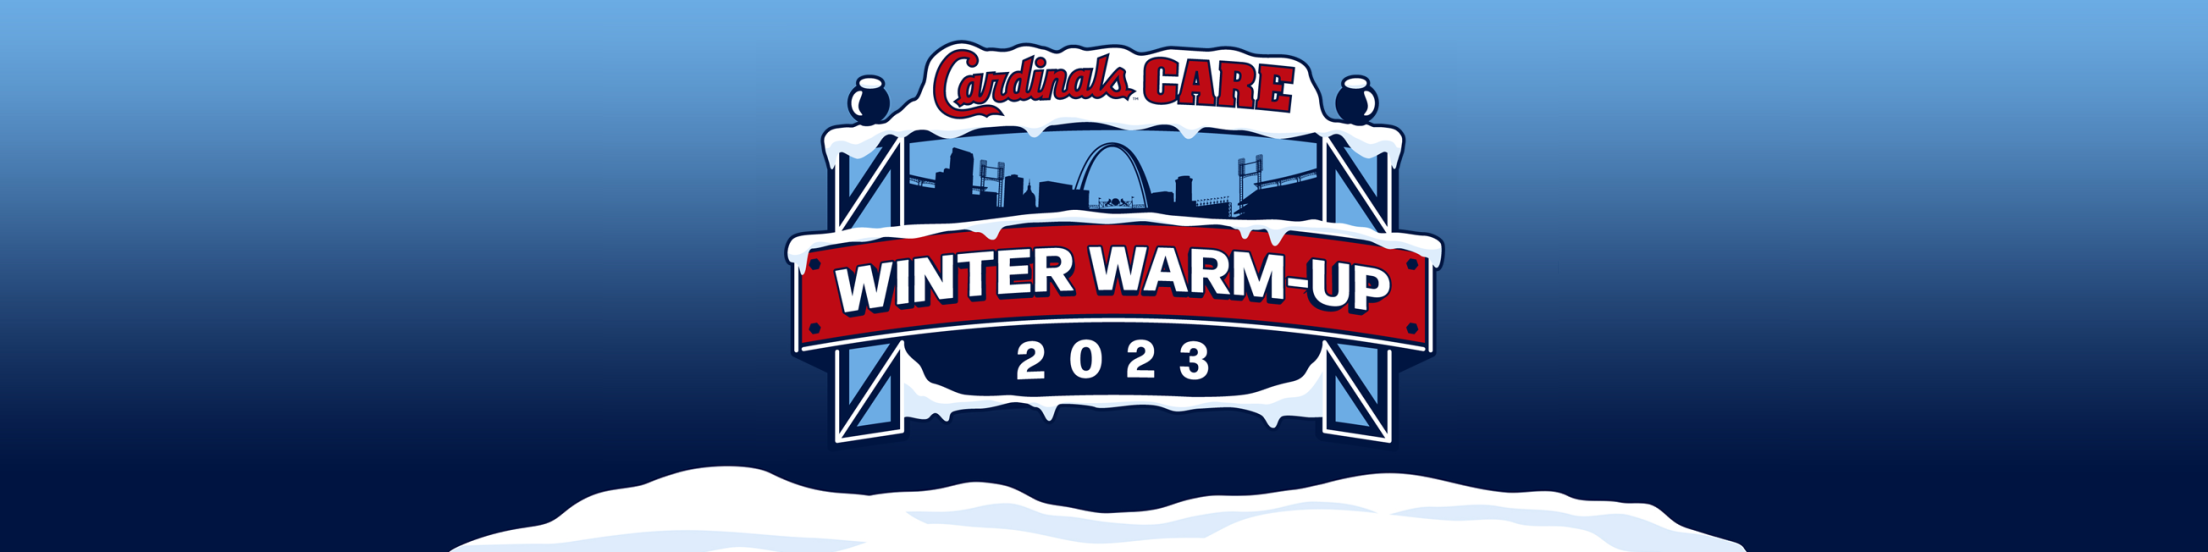 Cardinals Care Winter WarmUp St. Louis Cardinals